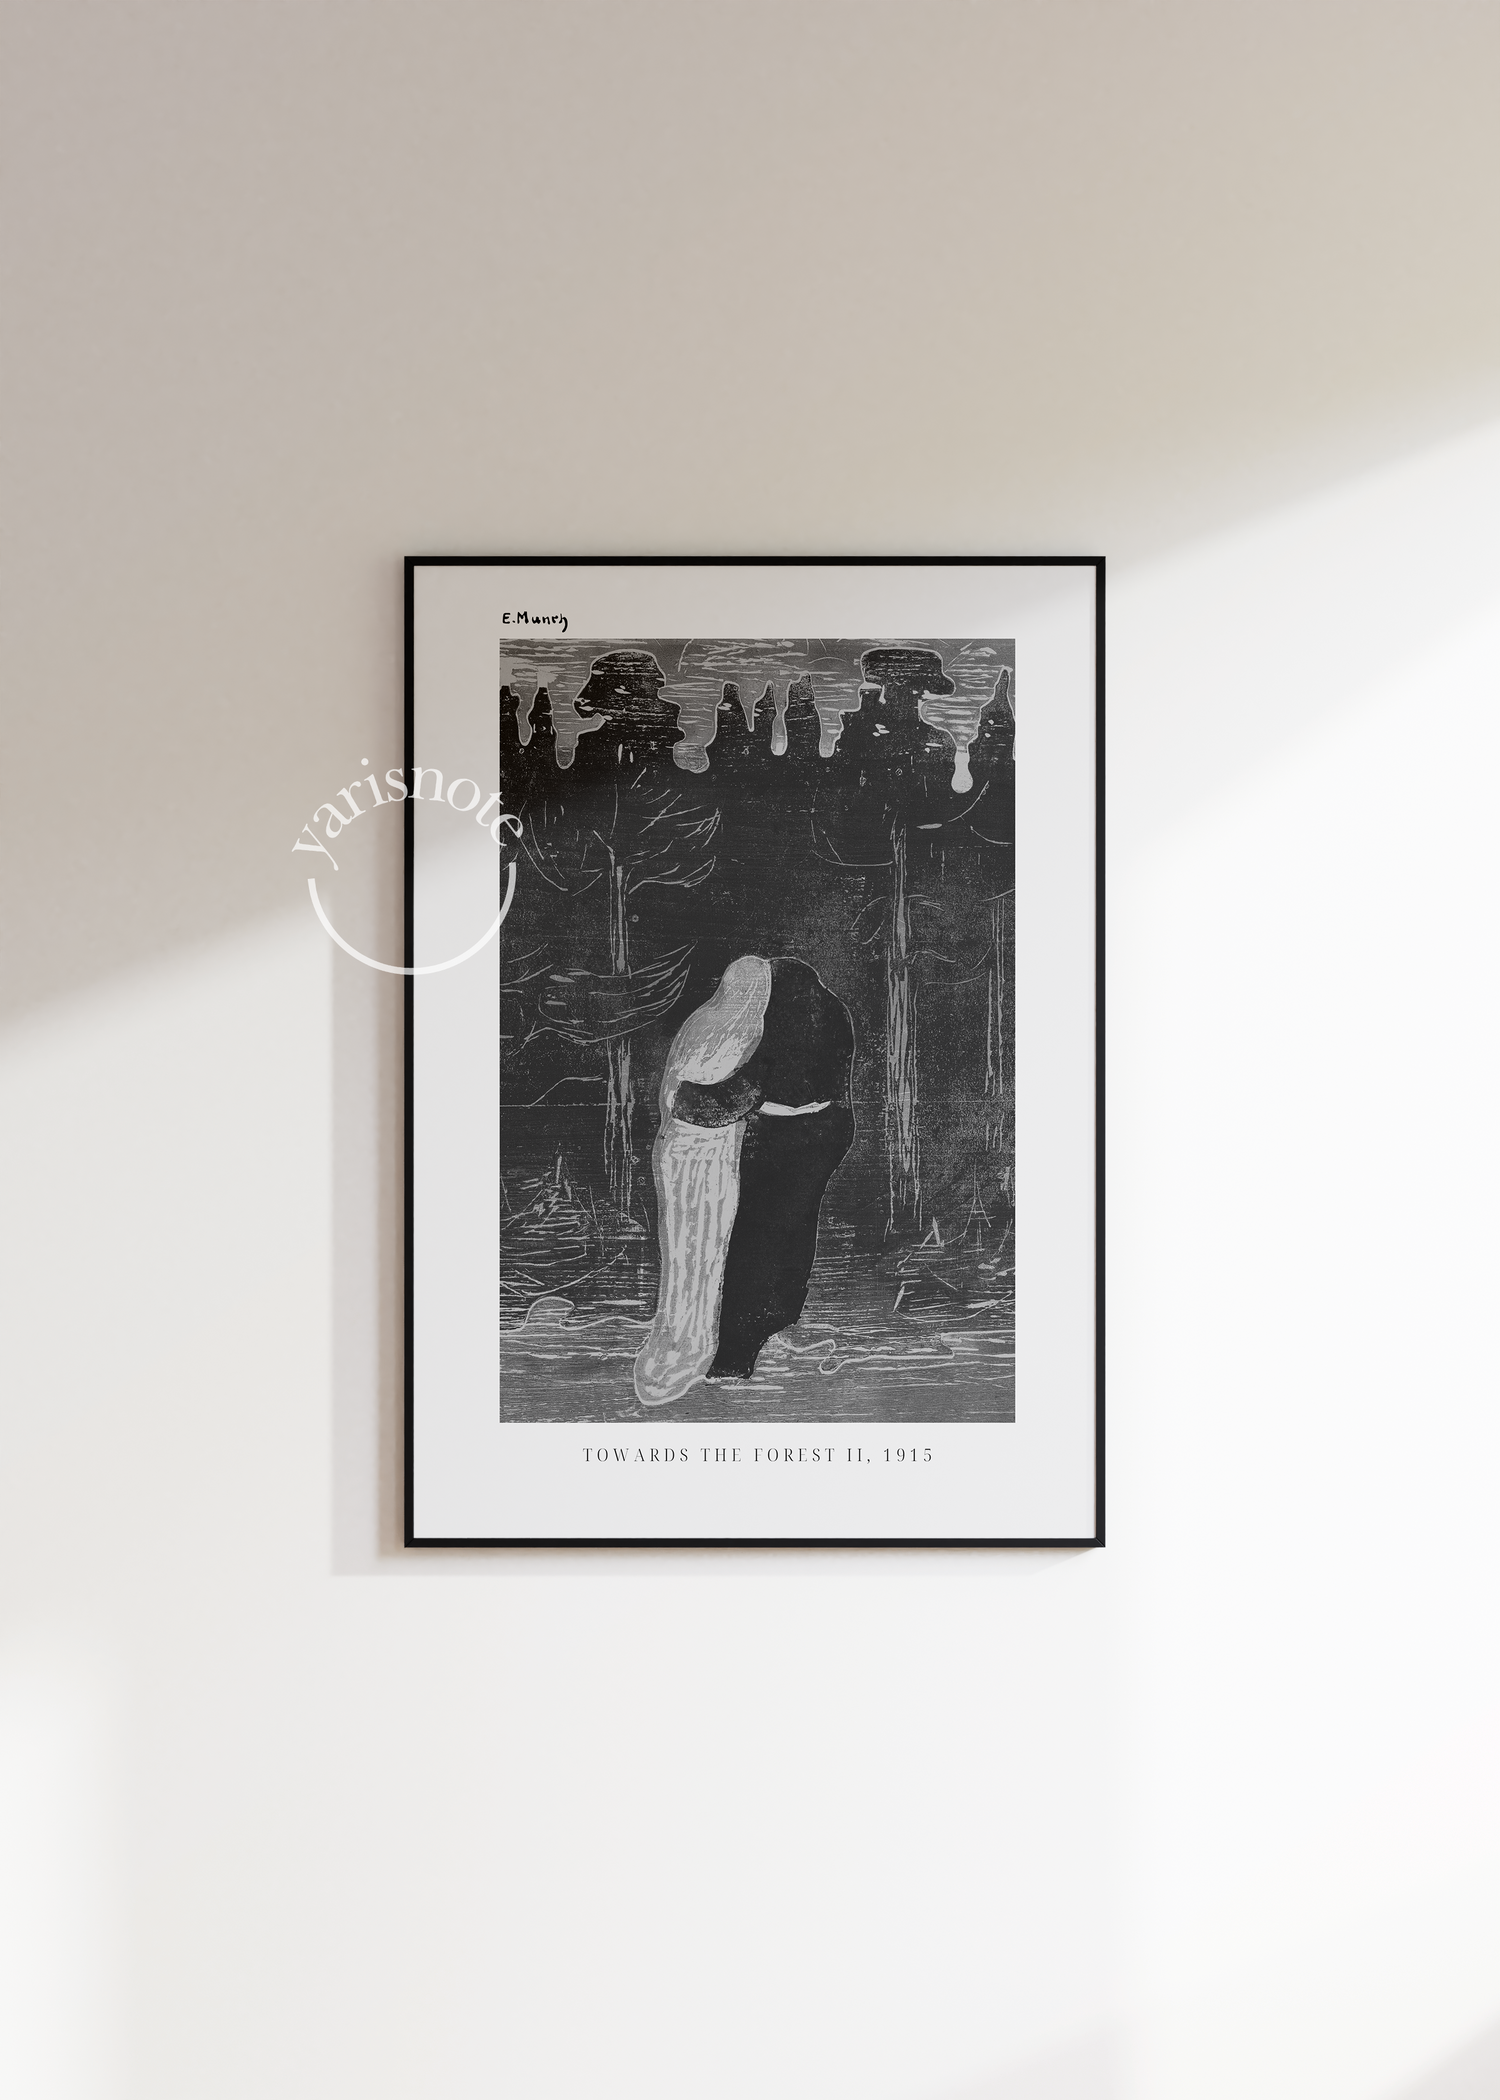 Edvard Munch Towards The Forest Unframed Poster